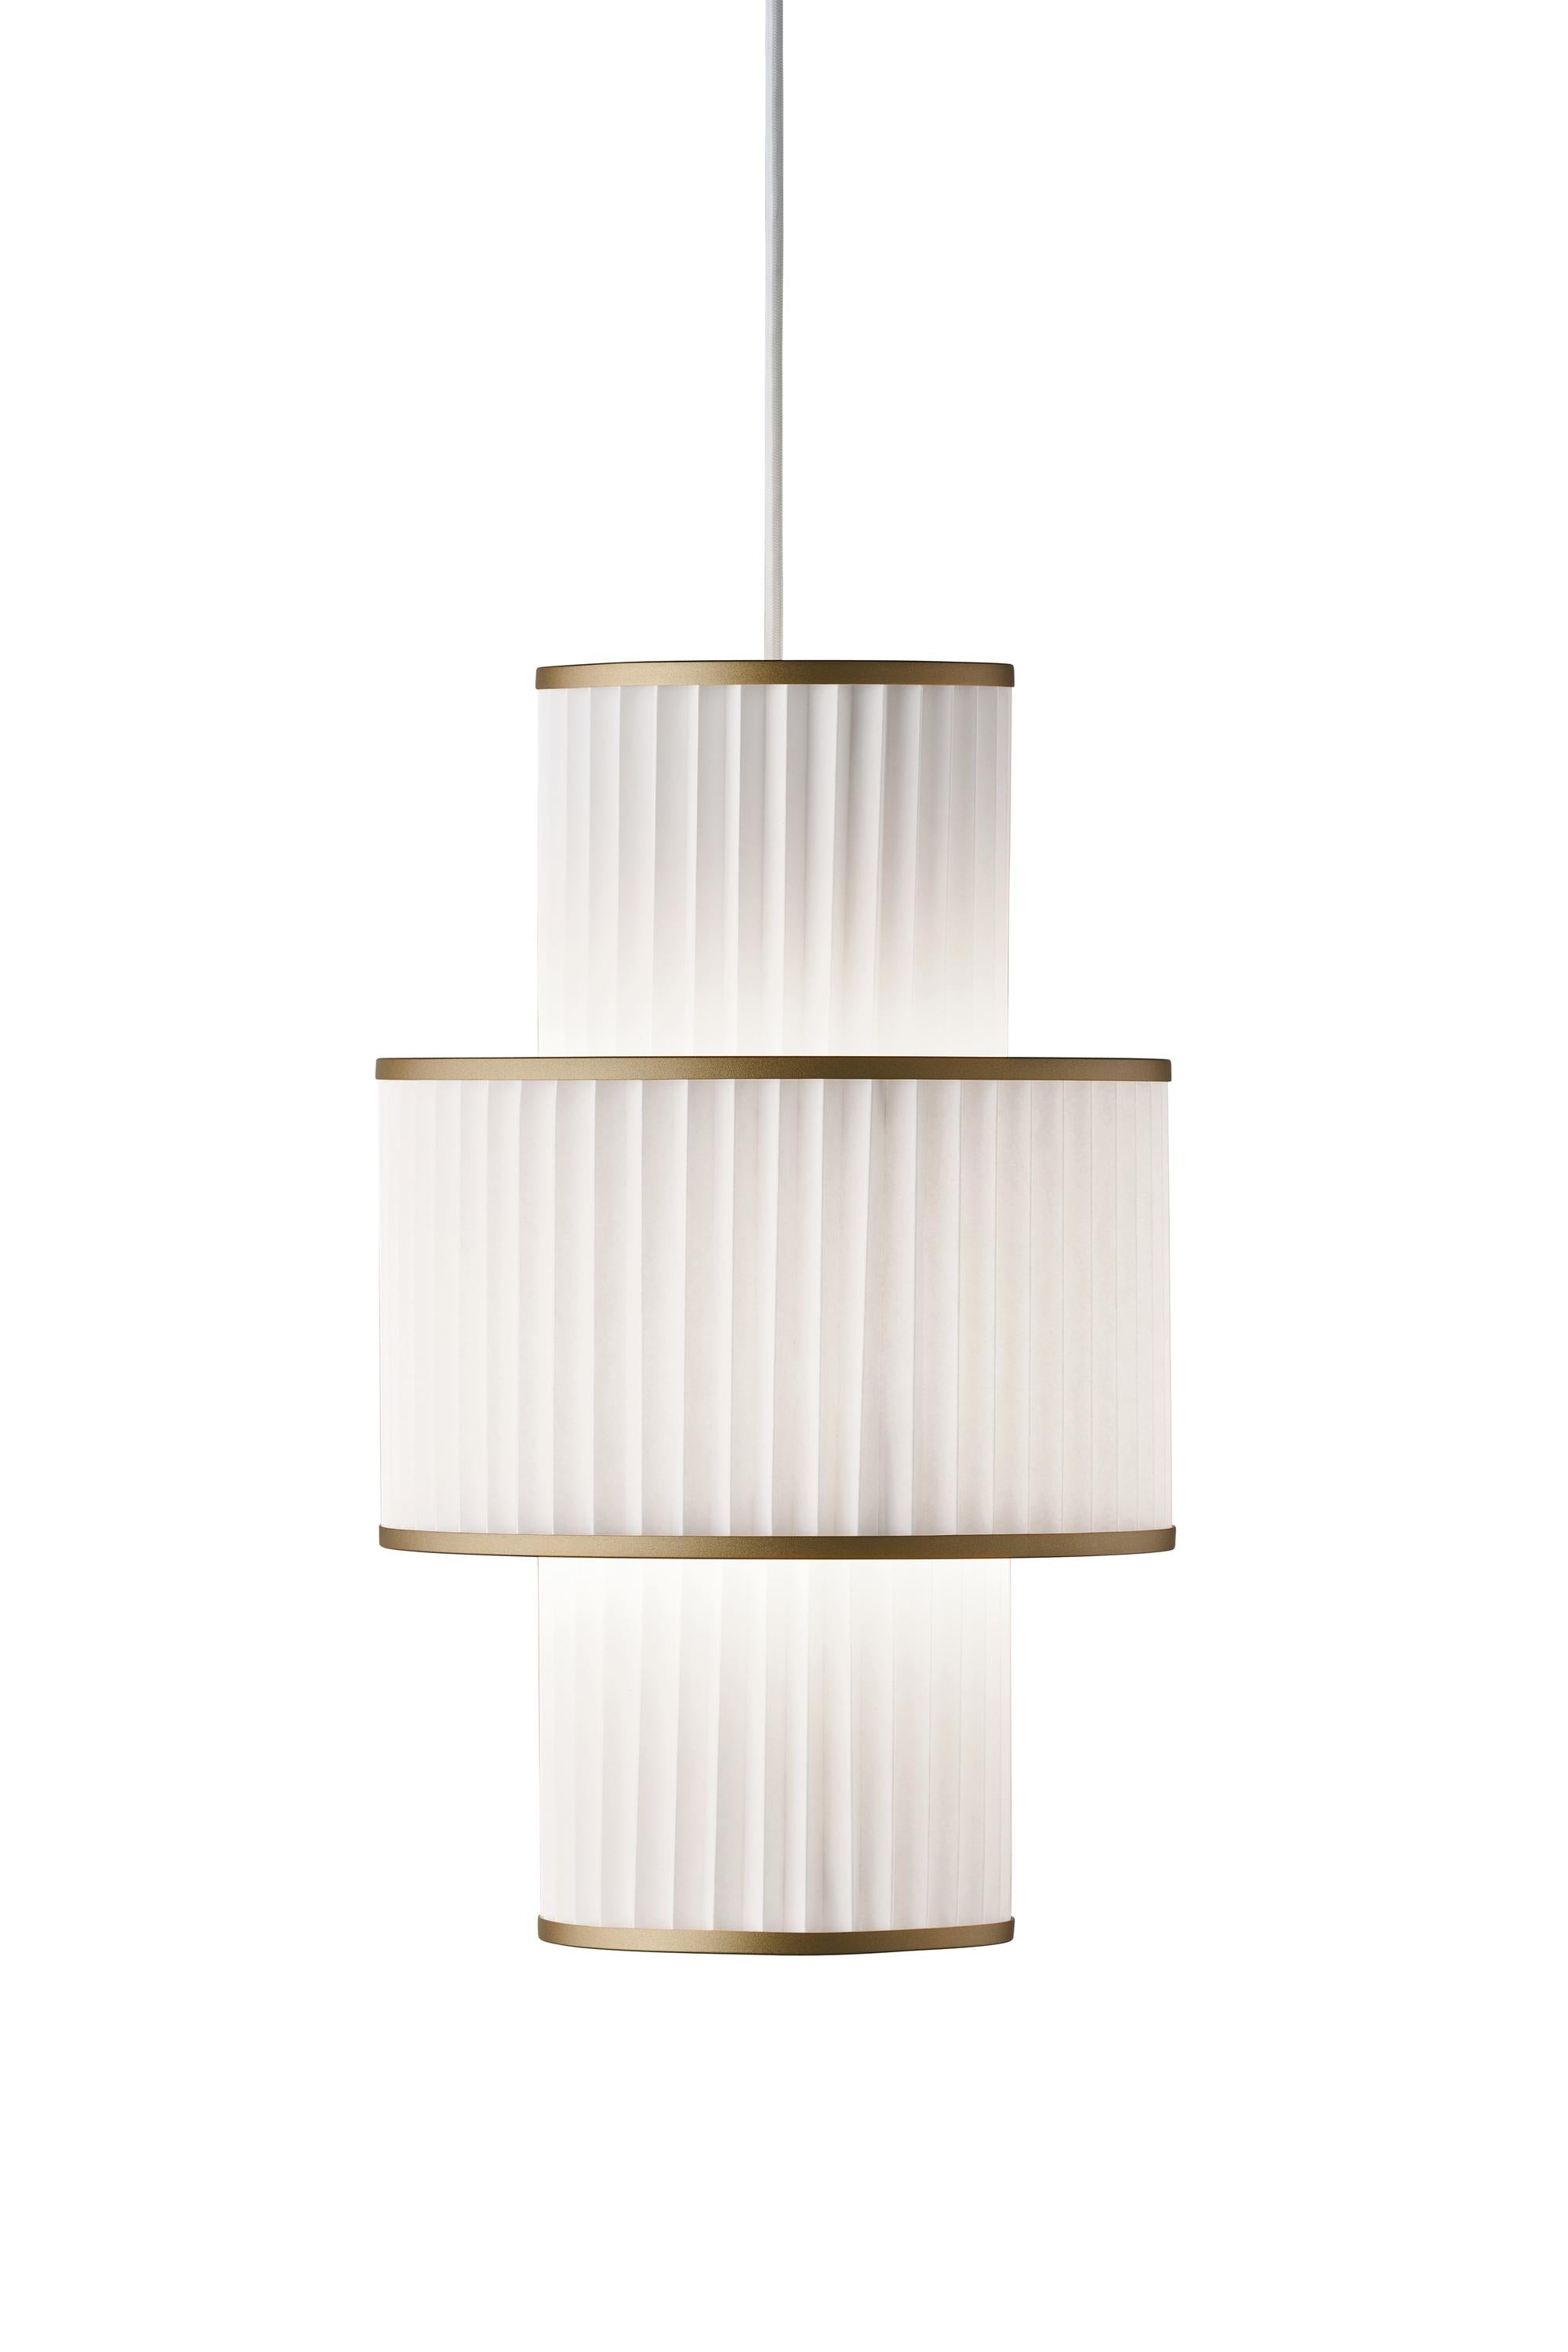 Le Klint Plivello Lámpara de suspensión dorada/blanca con 3 tonos (s m s)